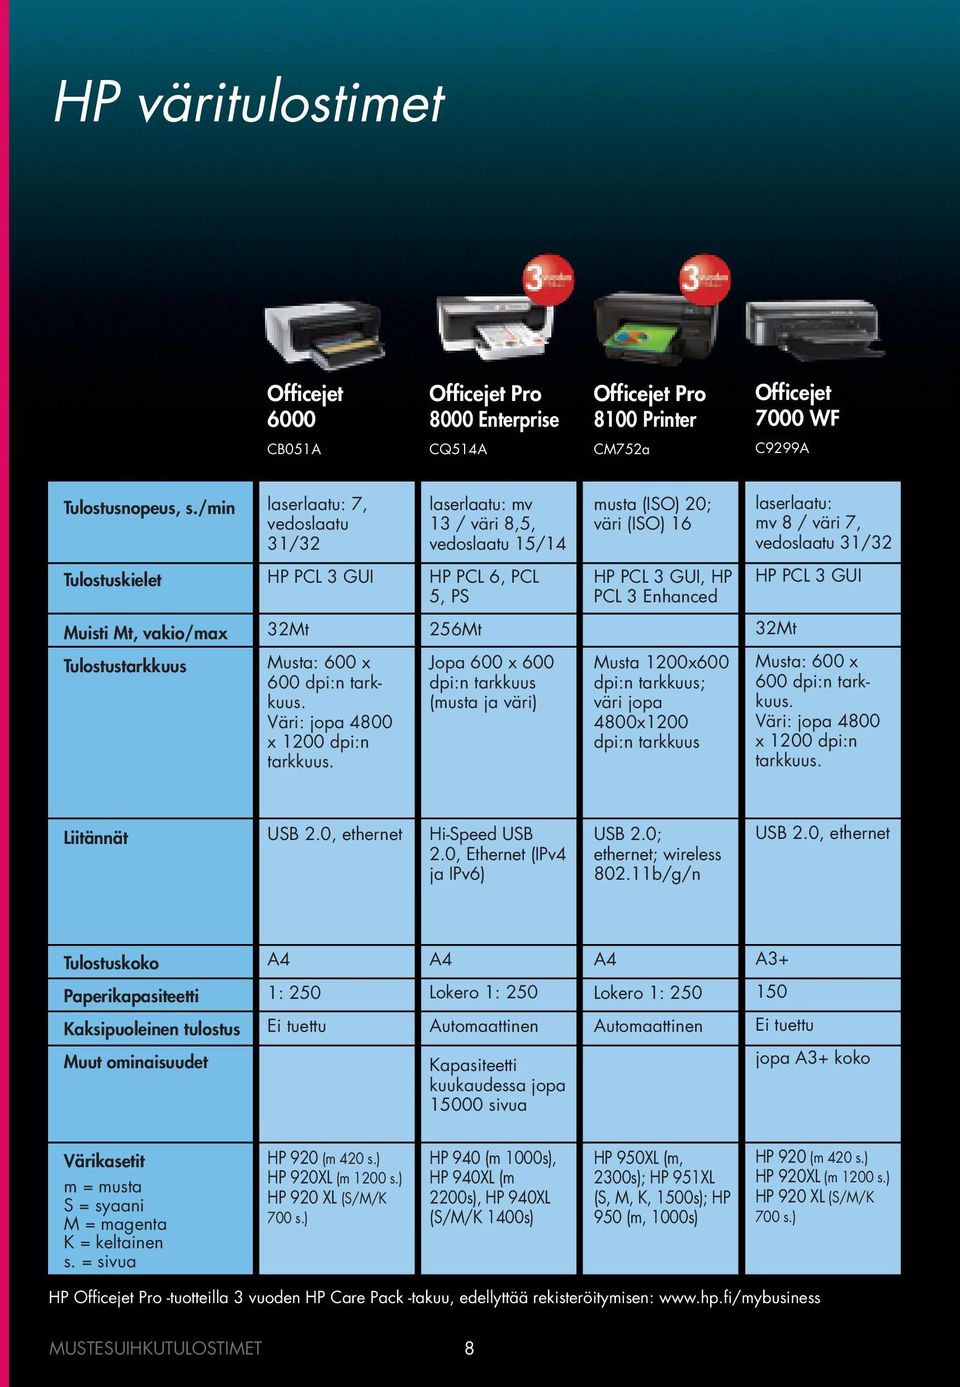 5, PS HP PCL 3 GUI, HP PCL 3 Enhanced HP PCL 3 GUI Muisti Mt, vakio/max 32Mt 256Mt 32Mt Tulostustarkkuus Musta: 600 x 600 dpi:n tarkkuus. Väri: jopa 4800 x 1200 dpi:n tarkkuus.